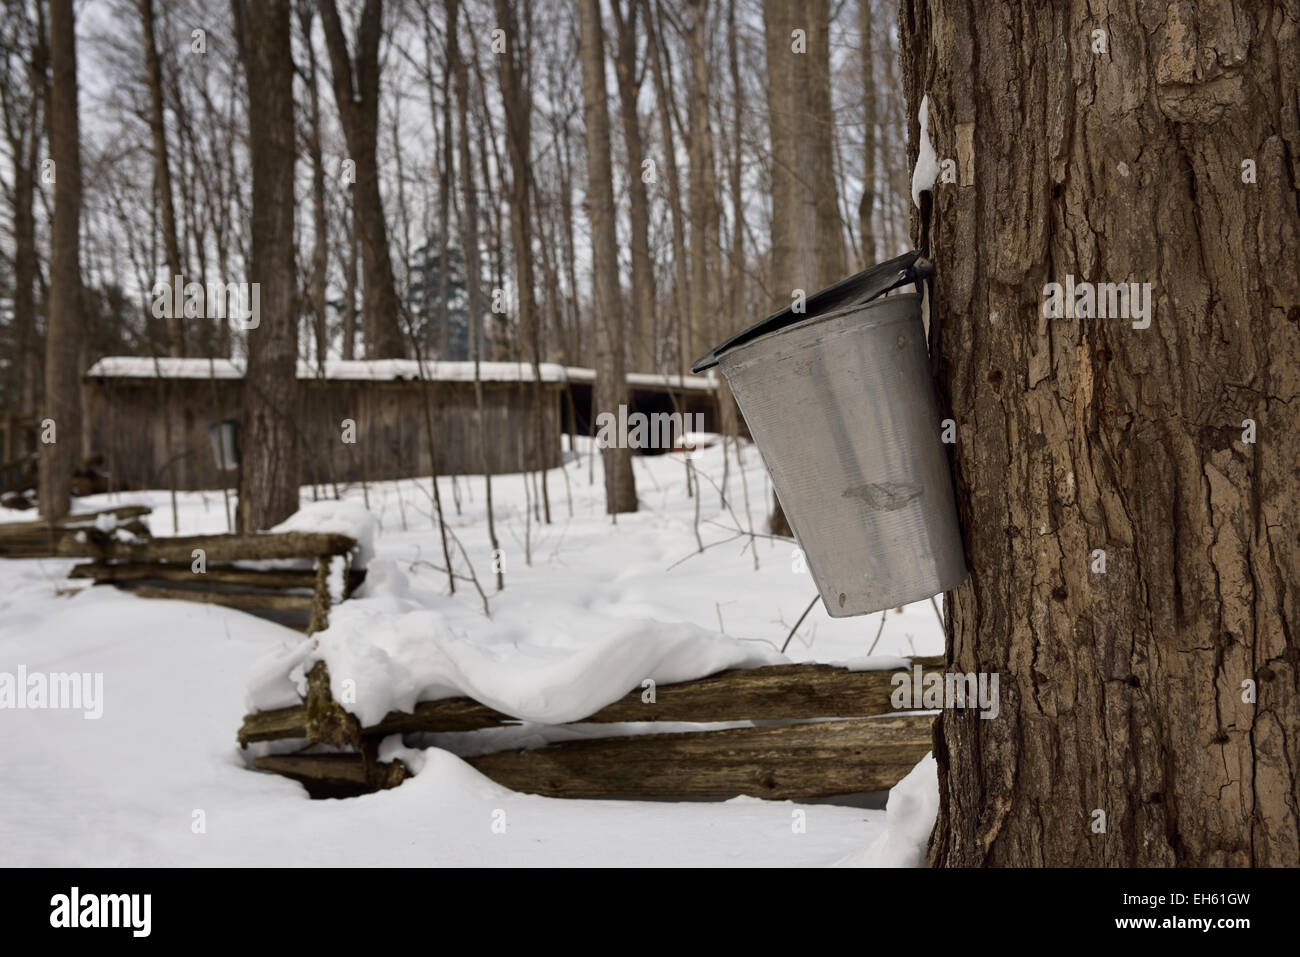 La benna sullo zucchero di acero in Ontario boccola di zucchero per raccogliere sap per sciroppo di zucchero shack in una coperta di neve forest Ontario Canada Foto Stock